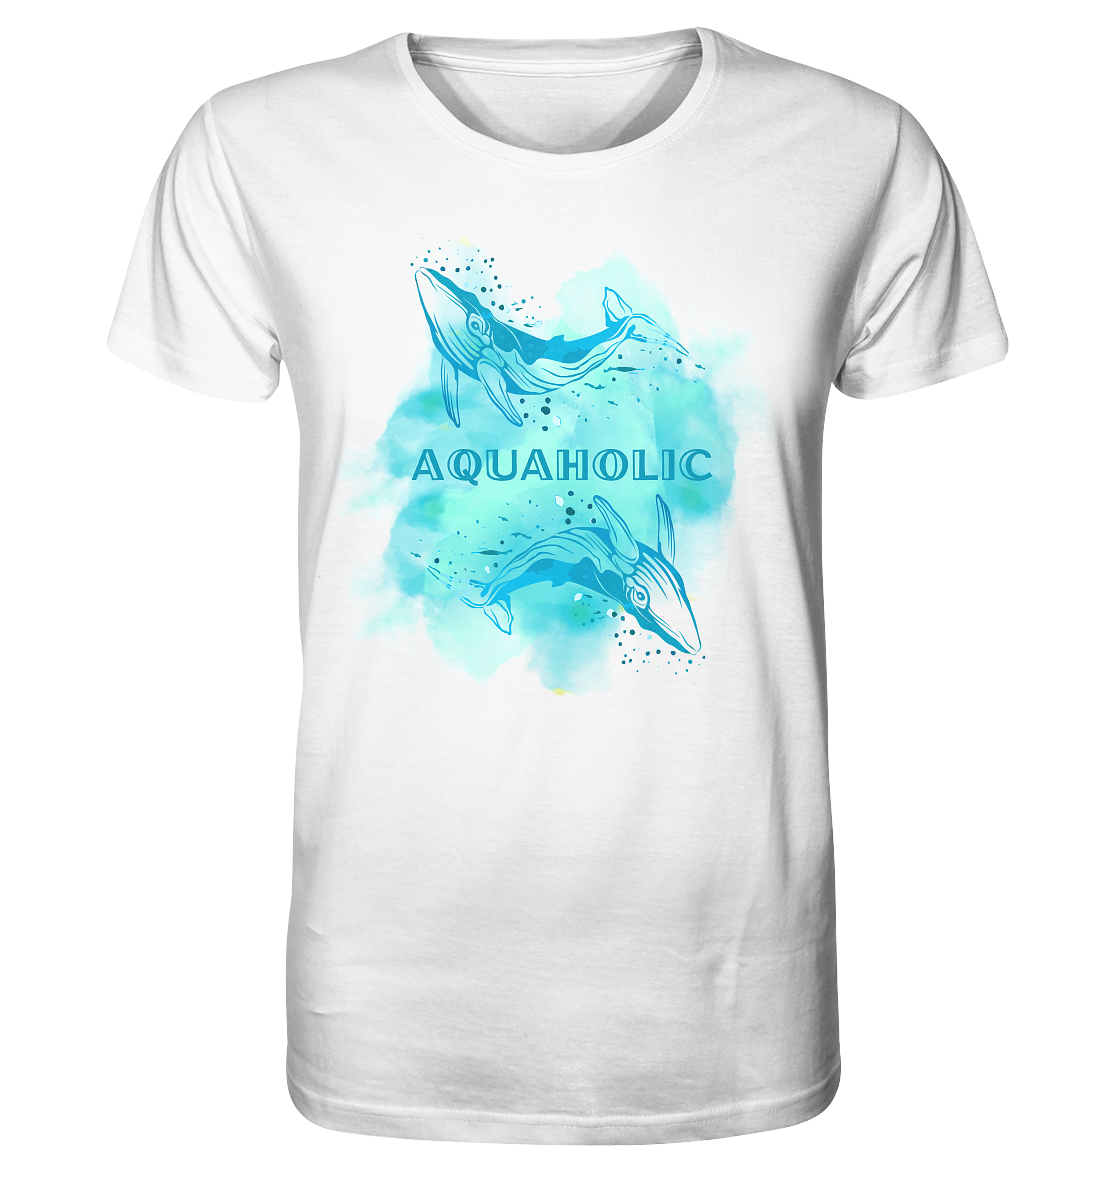 Aquaholic  - Mens Organic Shirt